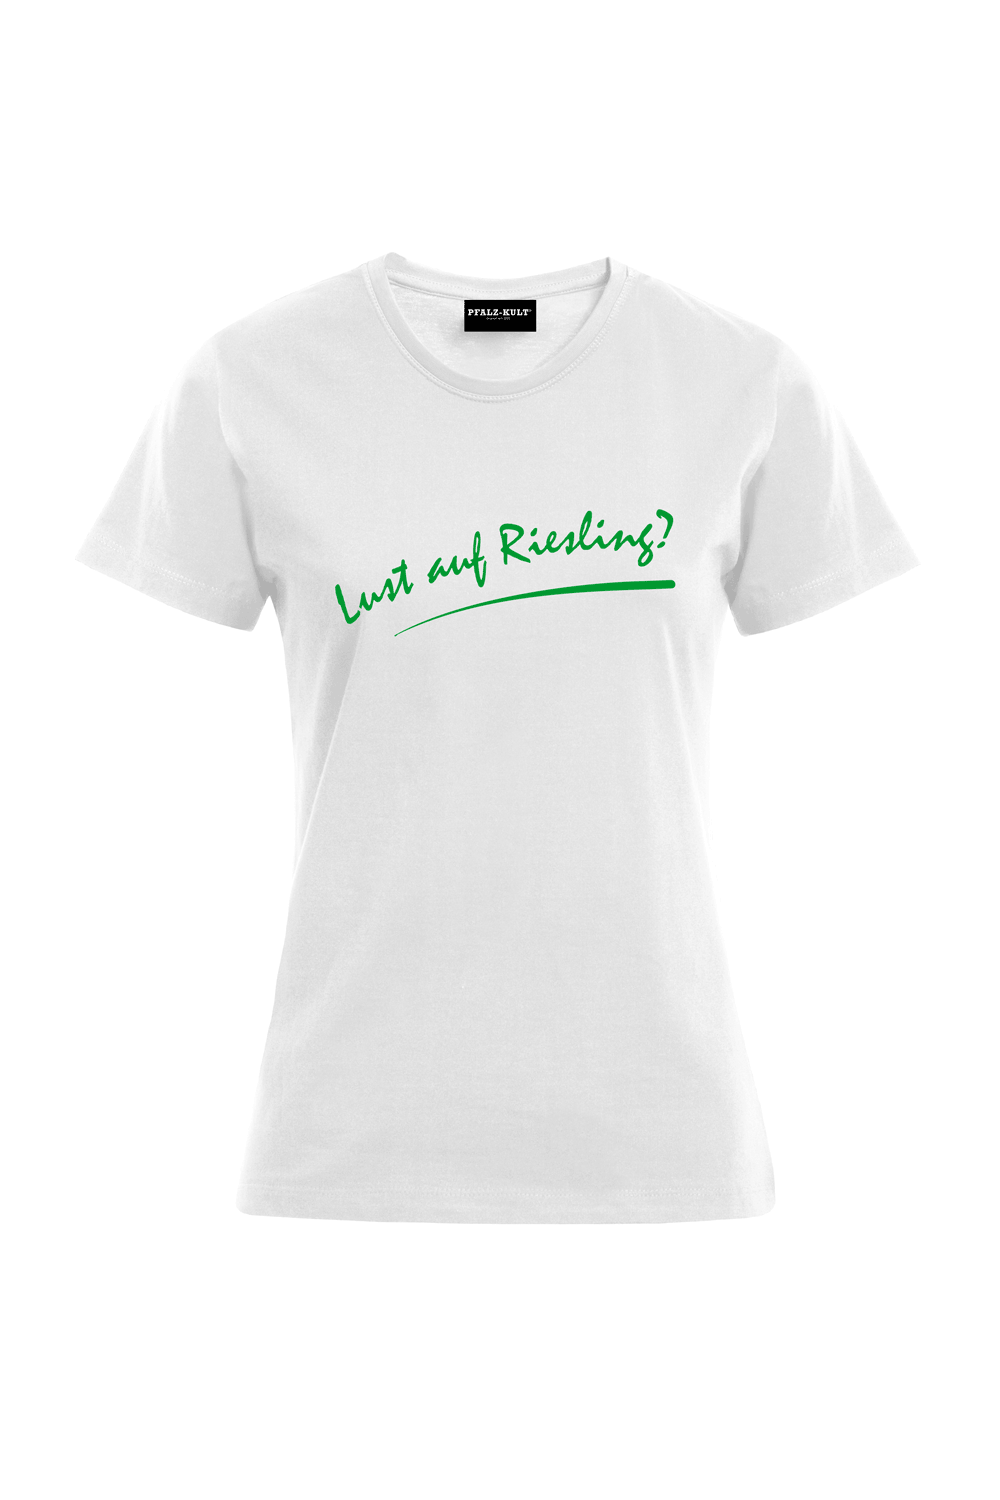 Lust auf  Riesling - Frauen T-Shirt